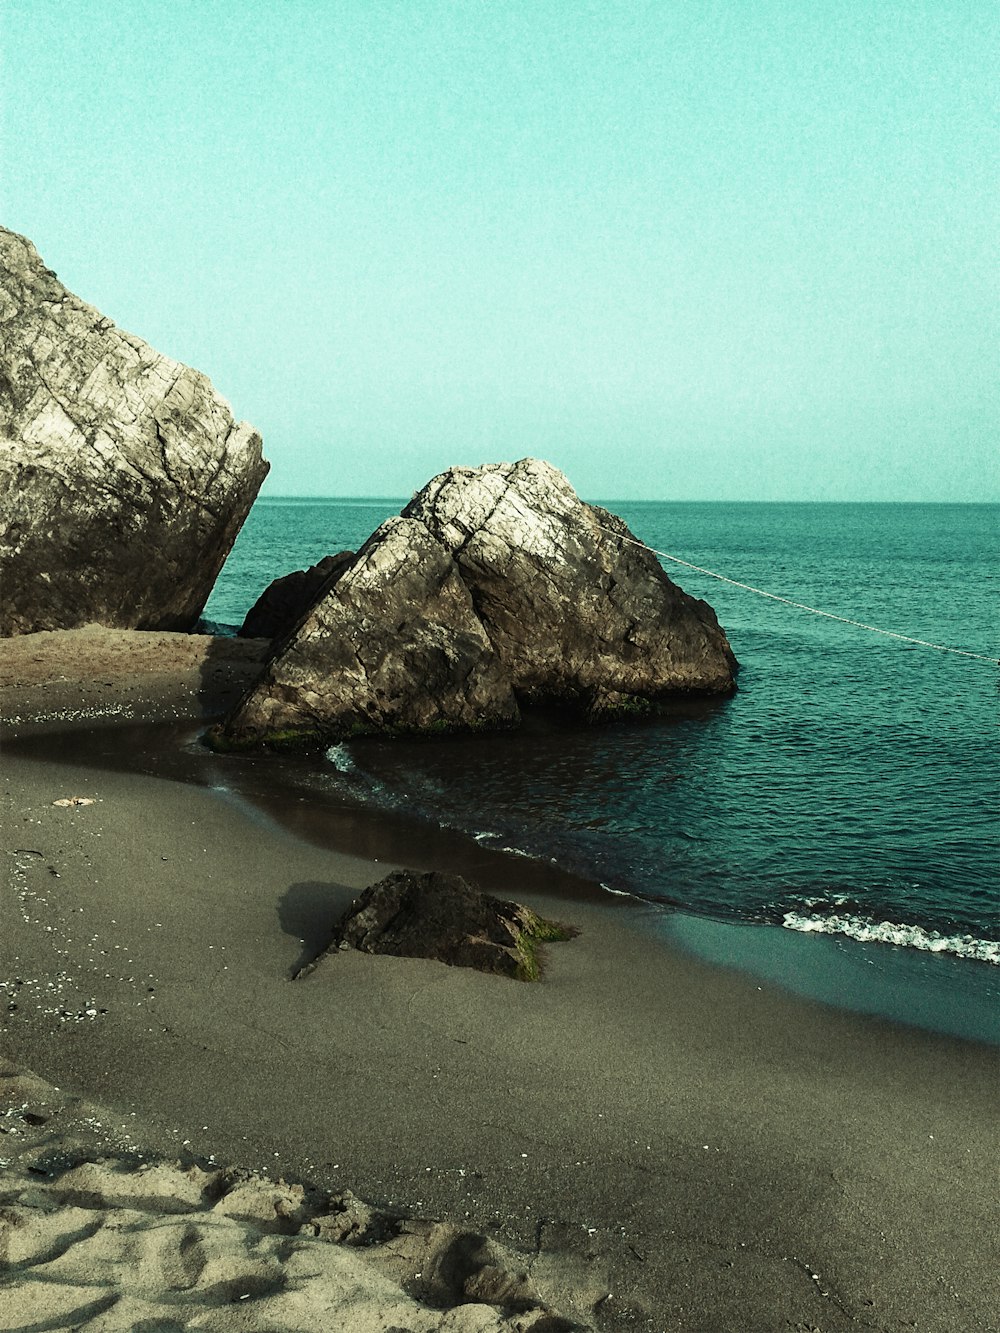 grey rock on seashore during daytime